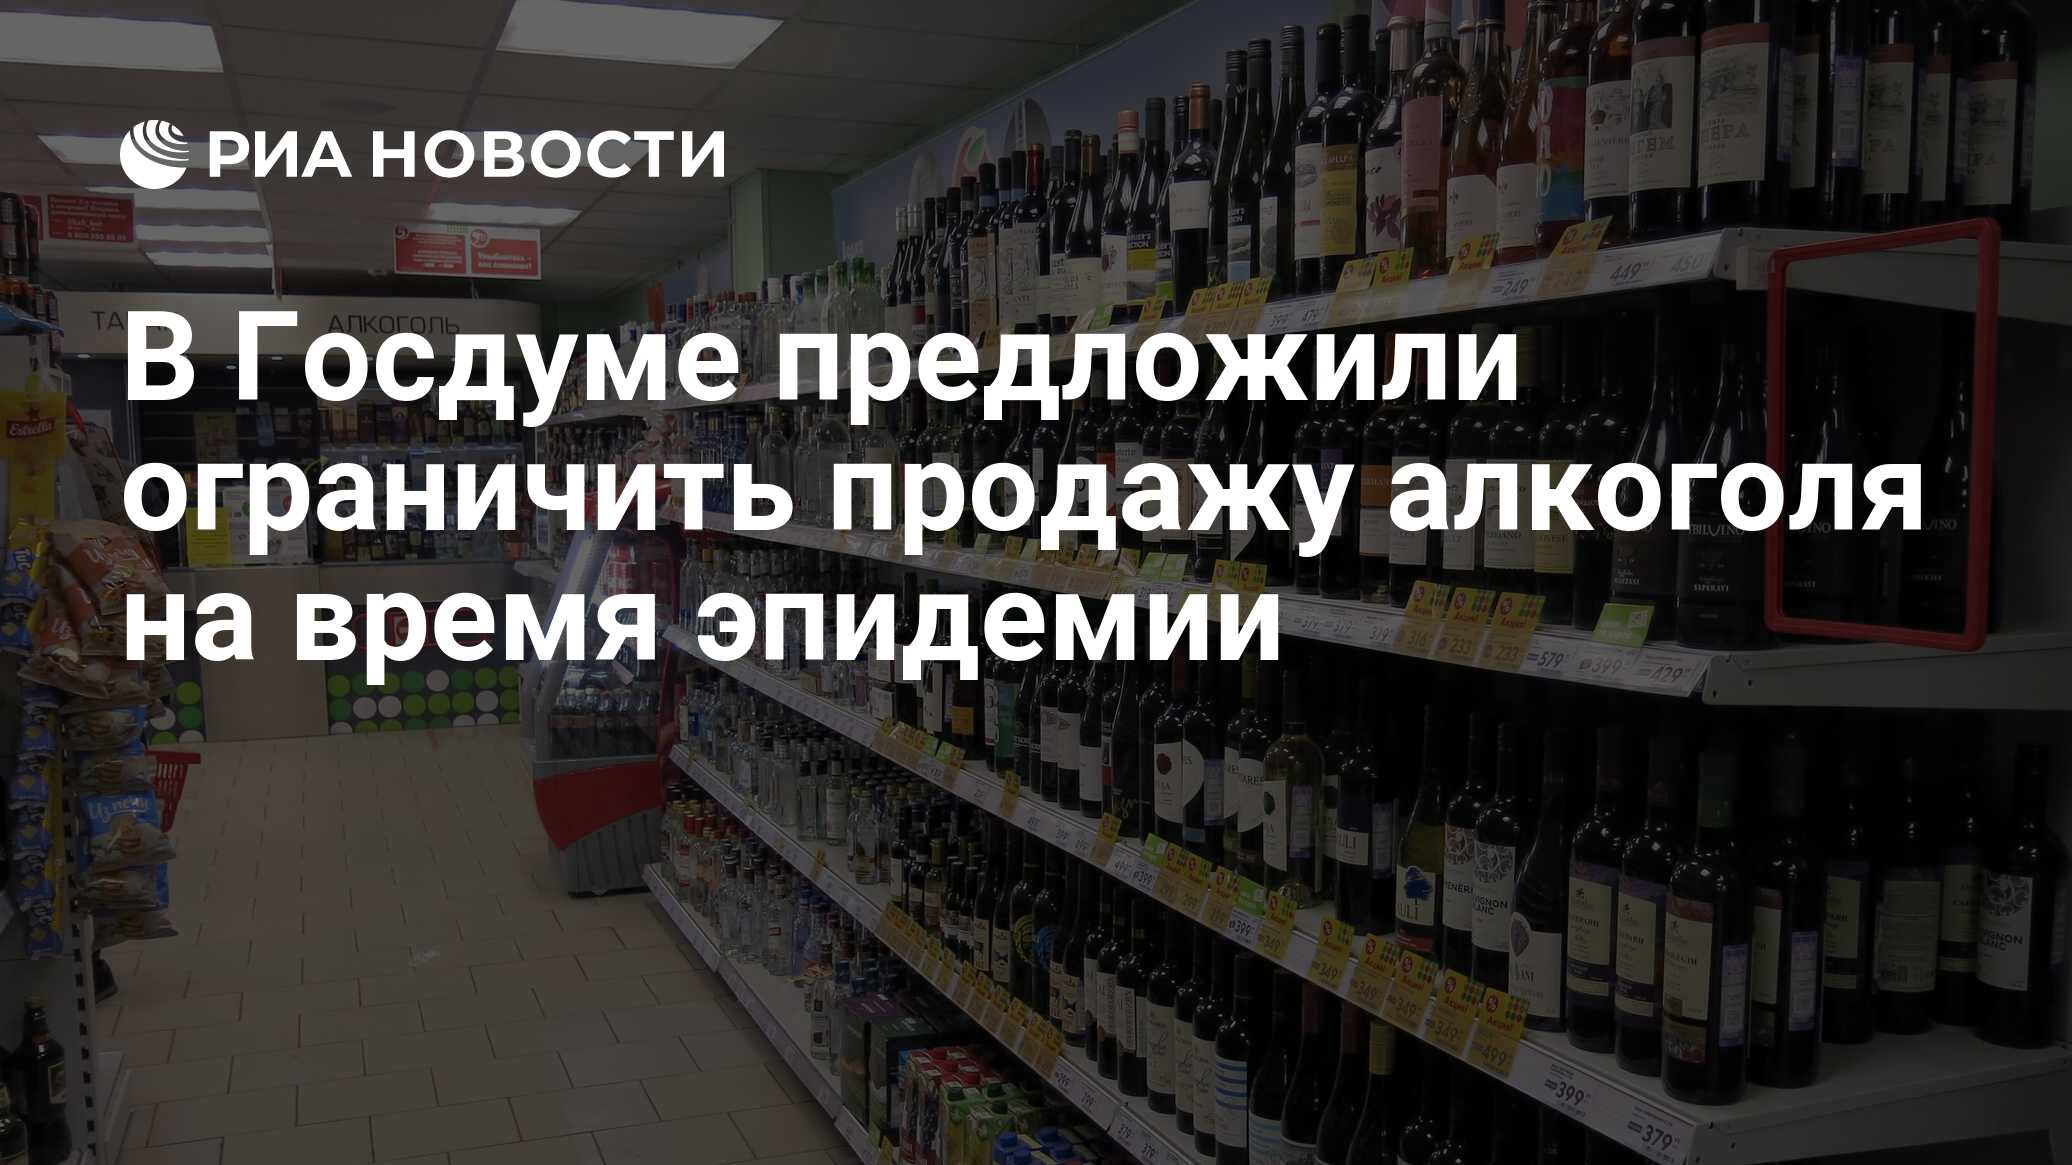 После скольки не продают. До скольки часов продают алкоголь. Со скольки часов продают алкоголь в магазине. Со скольки продают алкоголь в Татарстане.